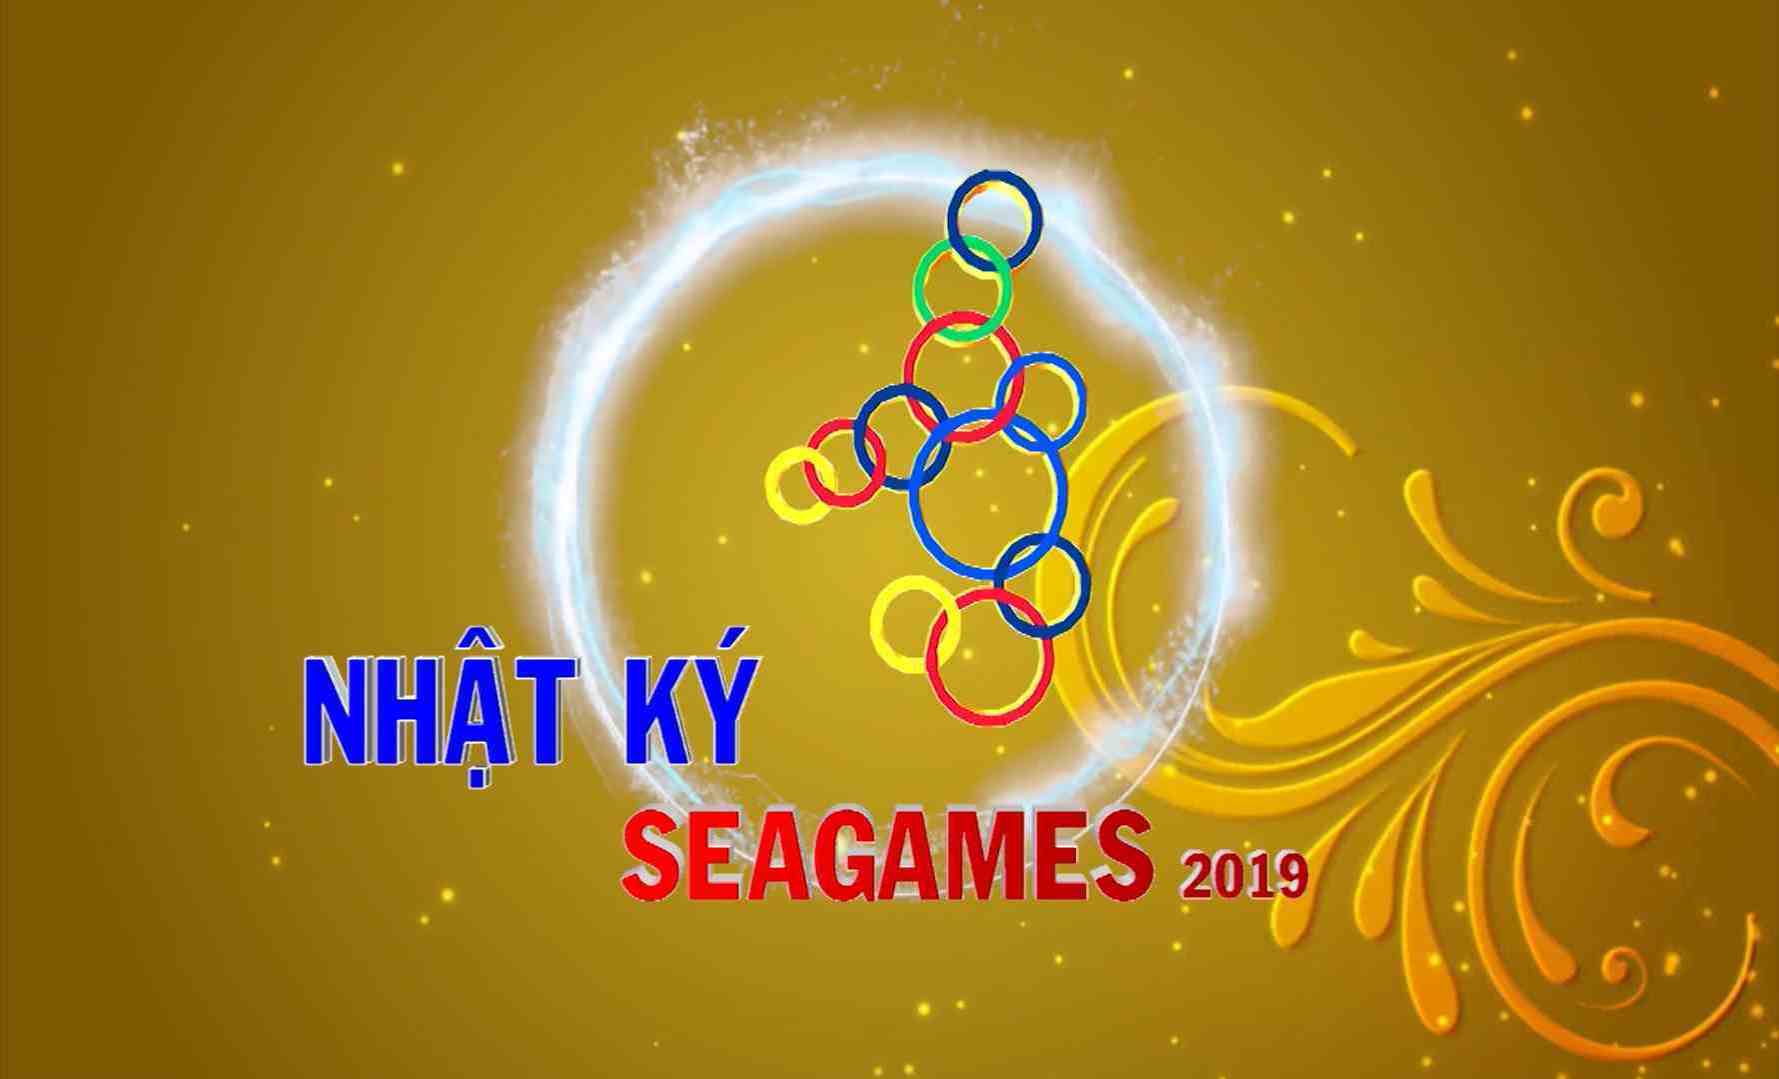 [Video] Nhật ký SEA Games 30 sáng (11-12-2019)